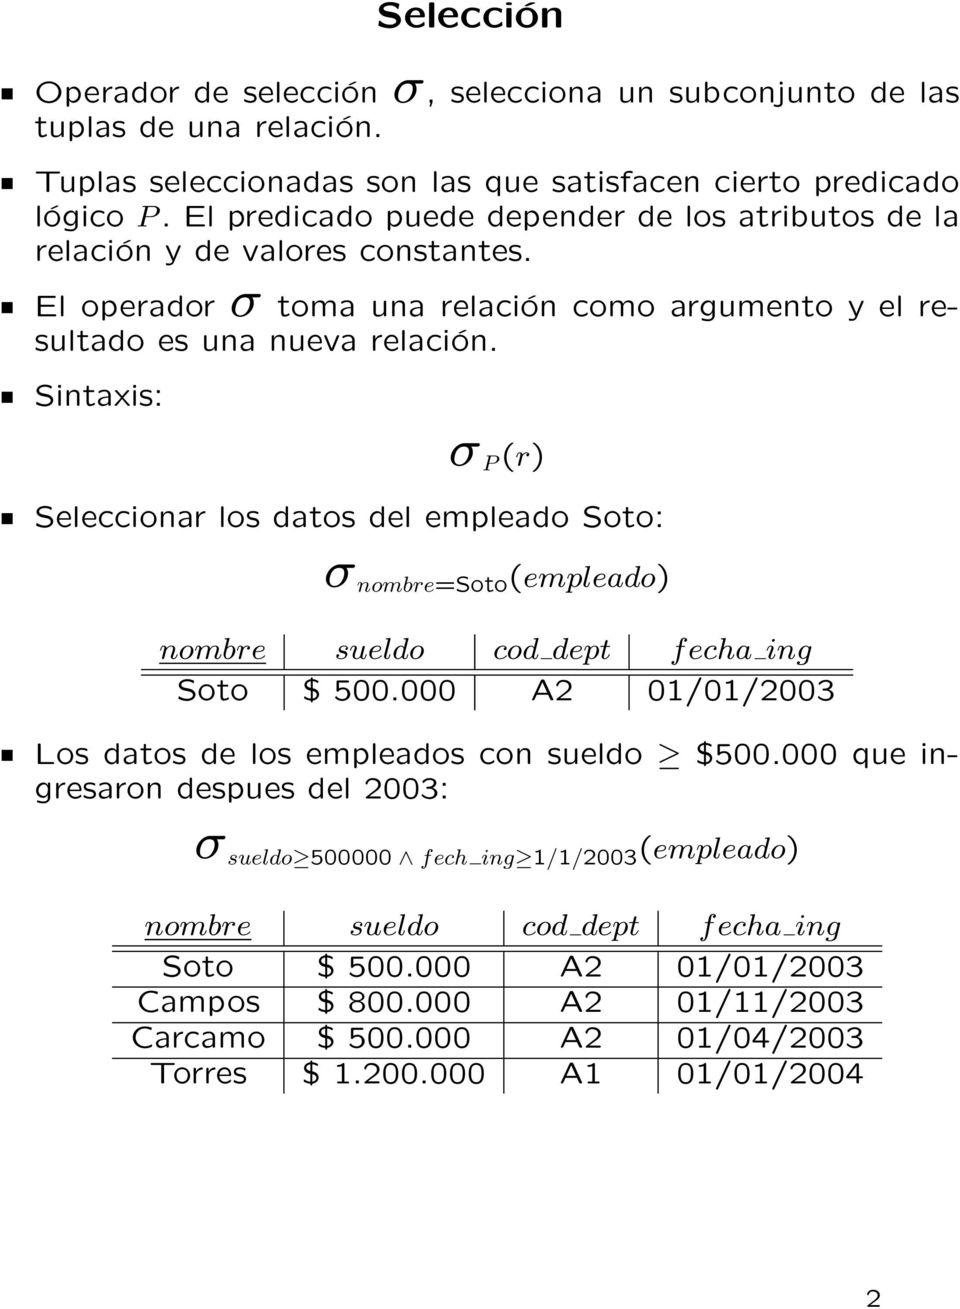 Sintaxis: σ P (r) Seleccionar los datos del empleado Soto: σ nombre=soto (empleado) nombre sueldo cod dept f echa ing Soto $ 500.000 A2 01/01/2003 Los datos de los empleados con sueldo $500.